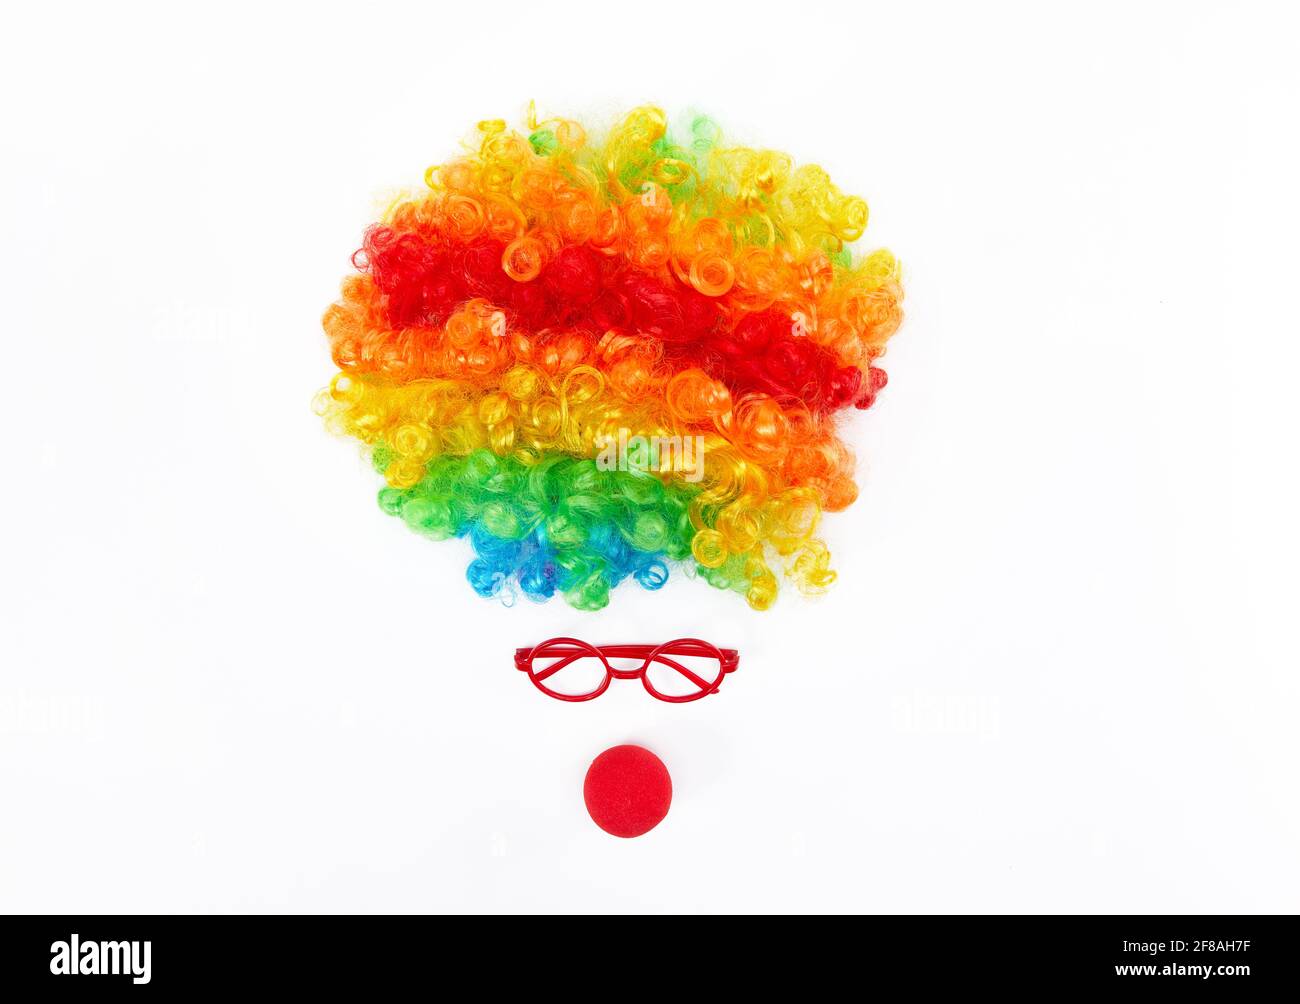 Vue de dessus du visage clown drôle formé avec une perruque colorée, des  verres, et le nez rouge sur fond blanc Photo Stock - Alamy